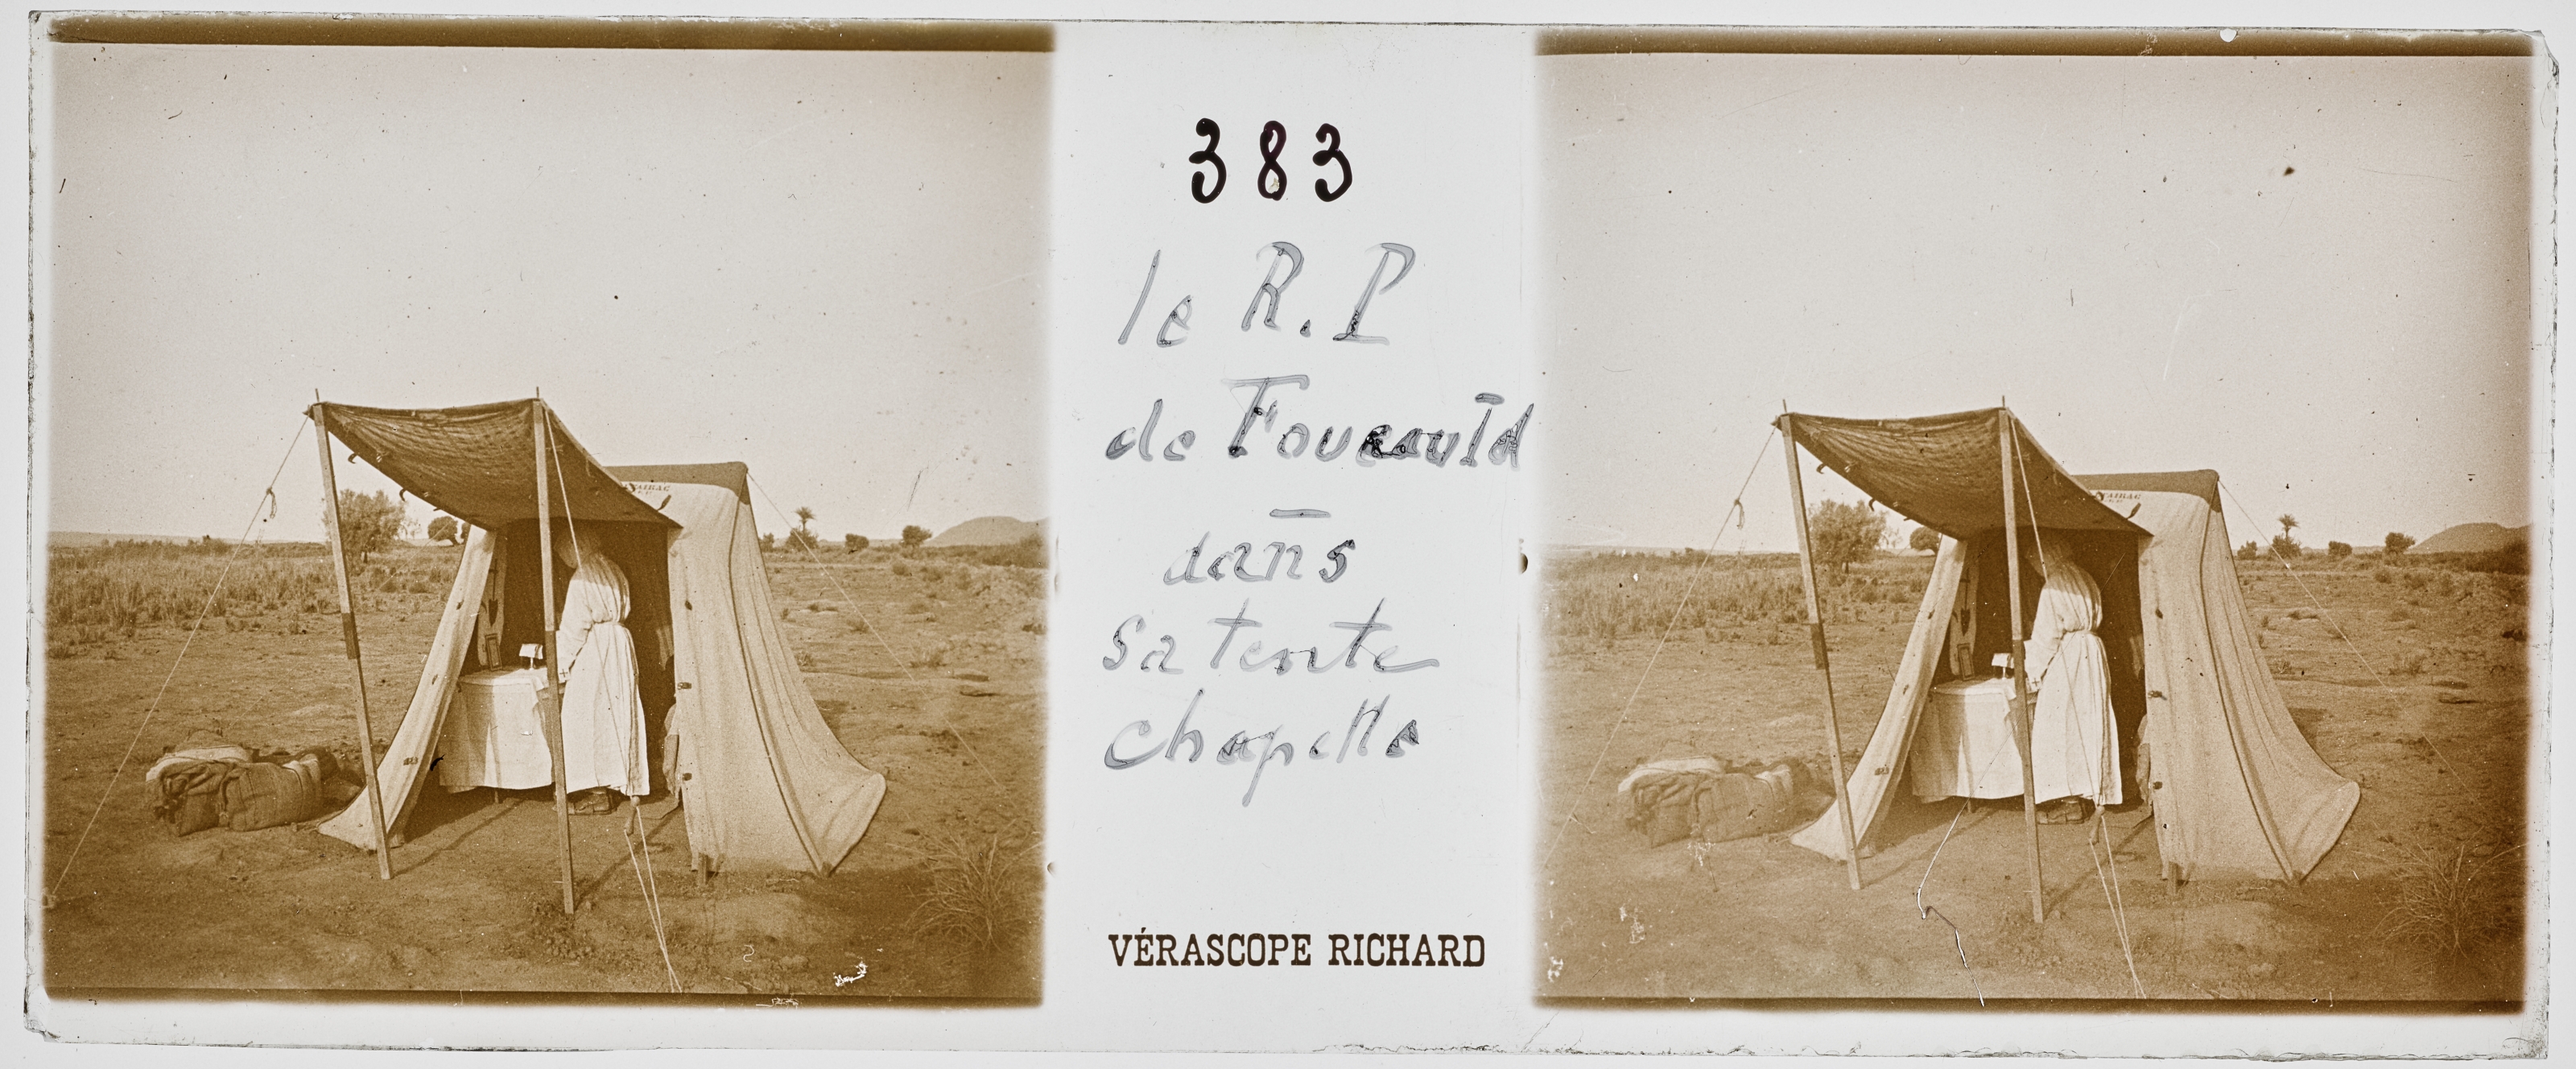 Le R.P de Foucauld dans sa tente chapelle